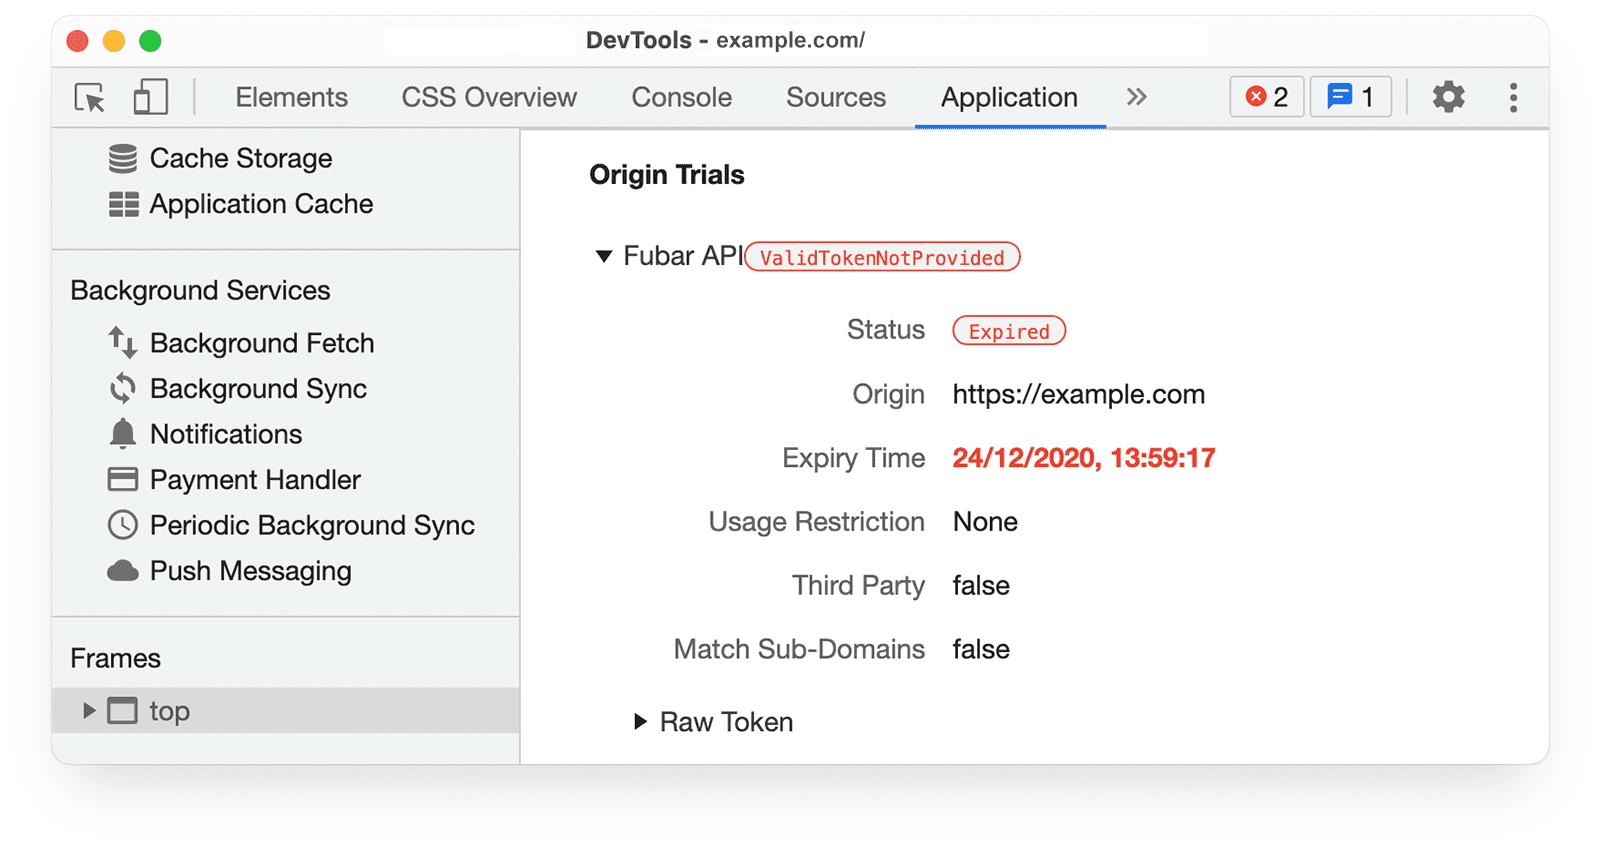 Narzędzia deweloperskie w Chrome 
informacje o testach origin w panelu aplikacji zawierające opcje ValidTokenNotProvided i Status Duration (Wygasł).